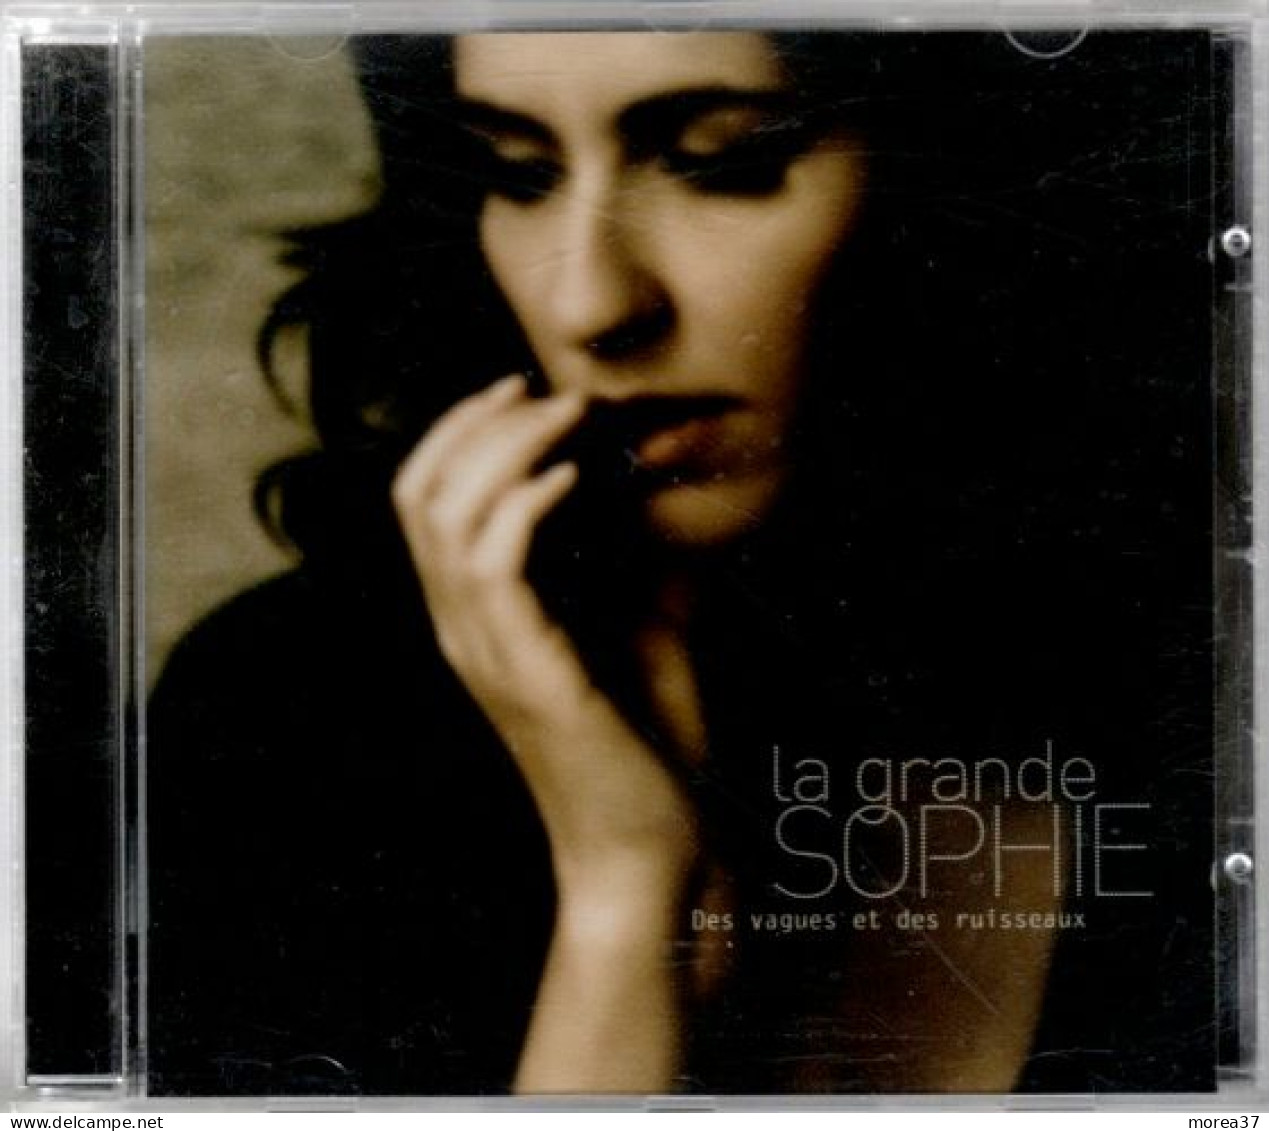 LA GRANDE SOPHIE   Des Vagues Et Des Ruisseaux   ( Ref CD2) - Other - French Music